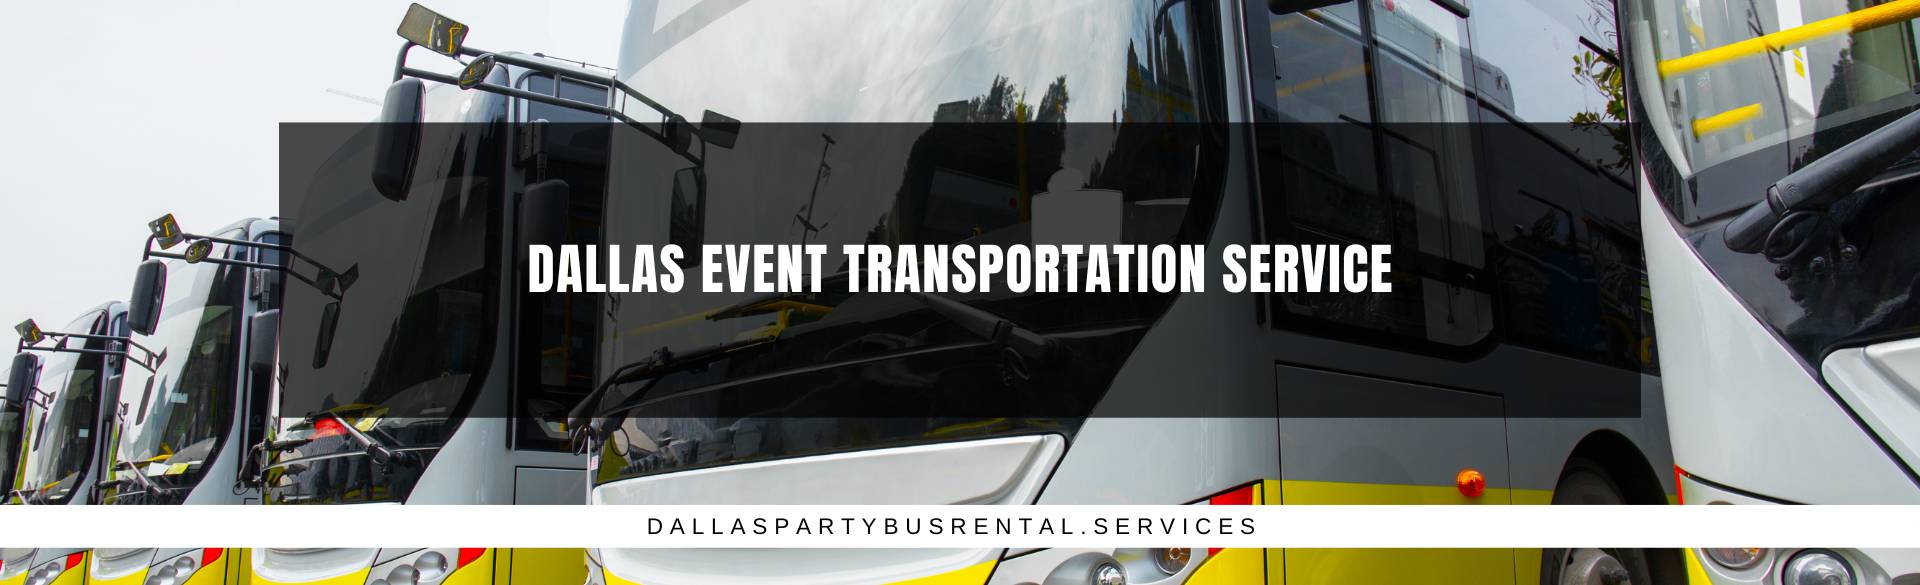 Dallas Event Transportation Service